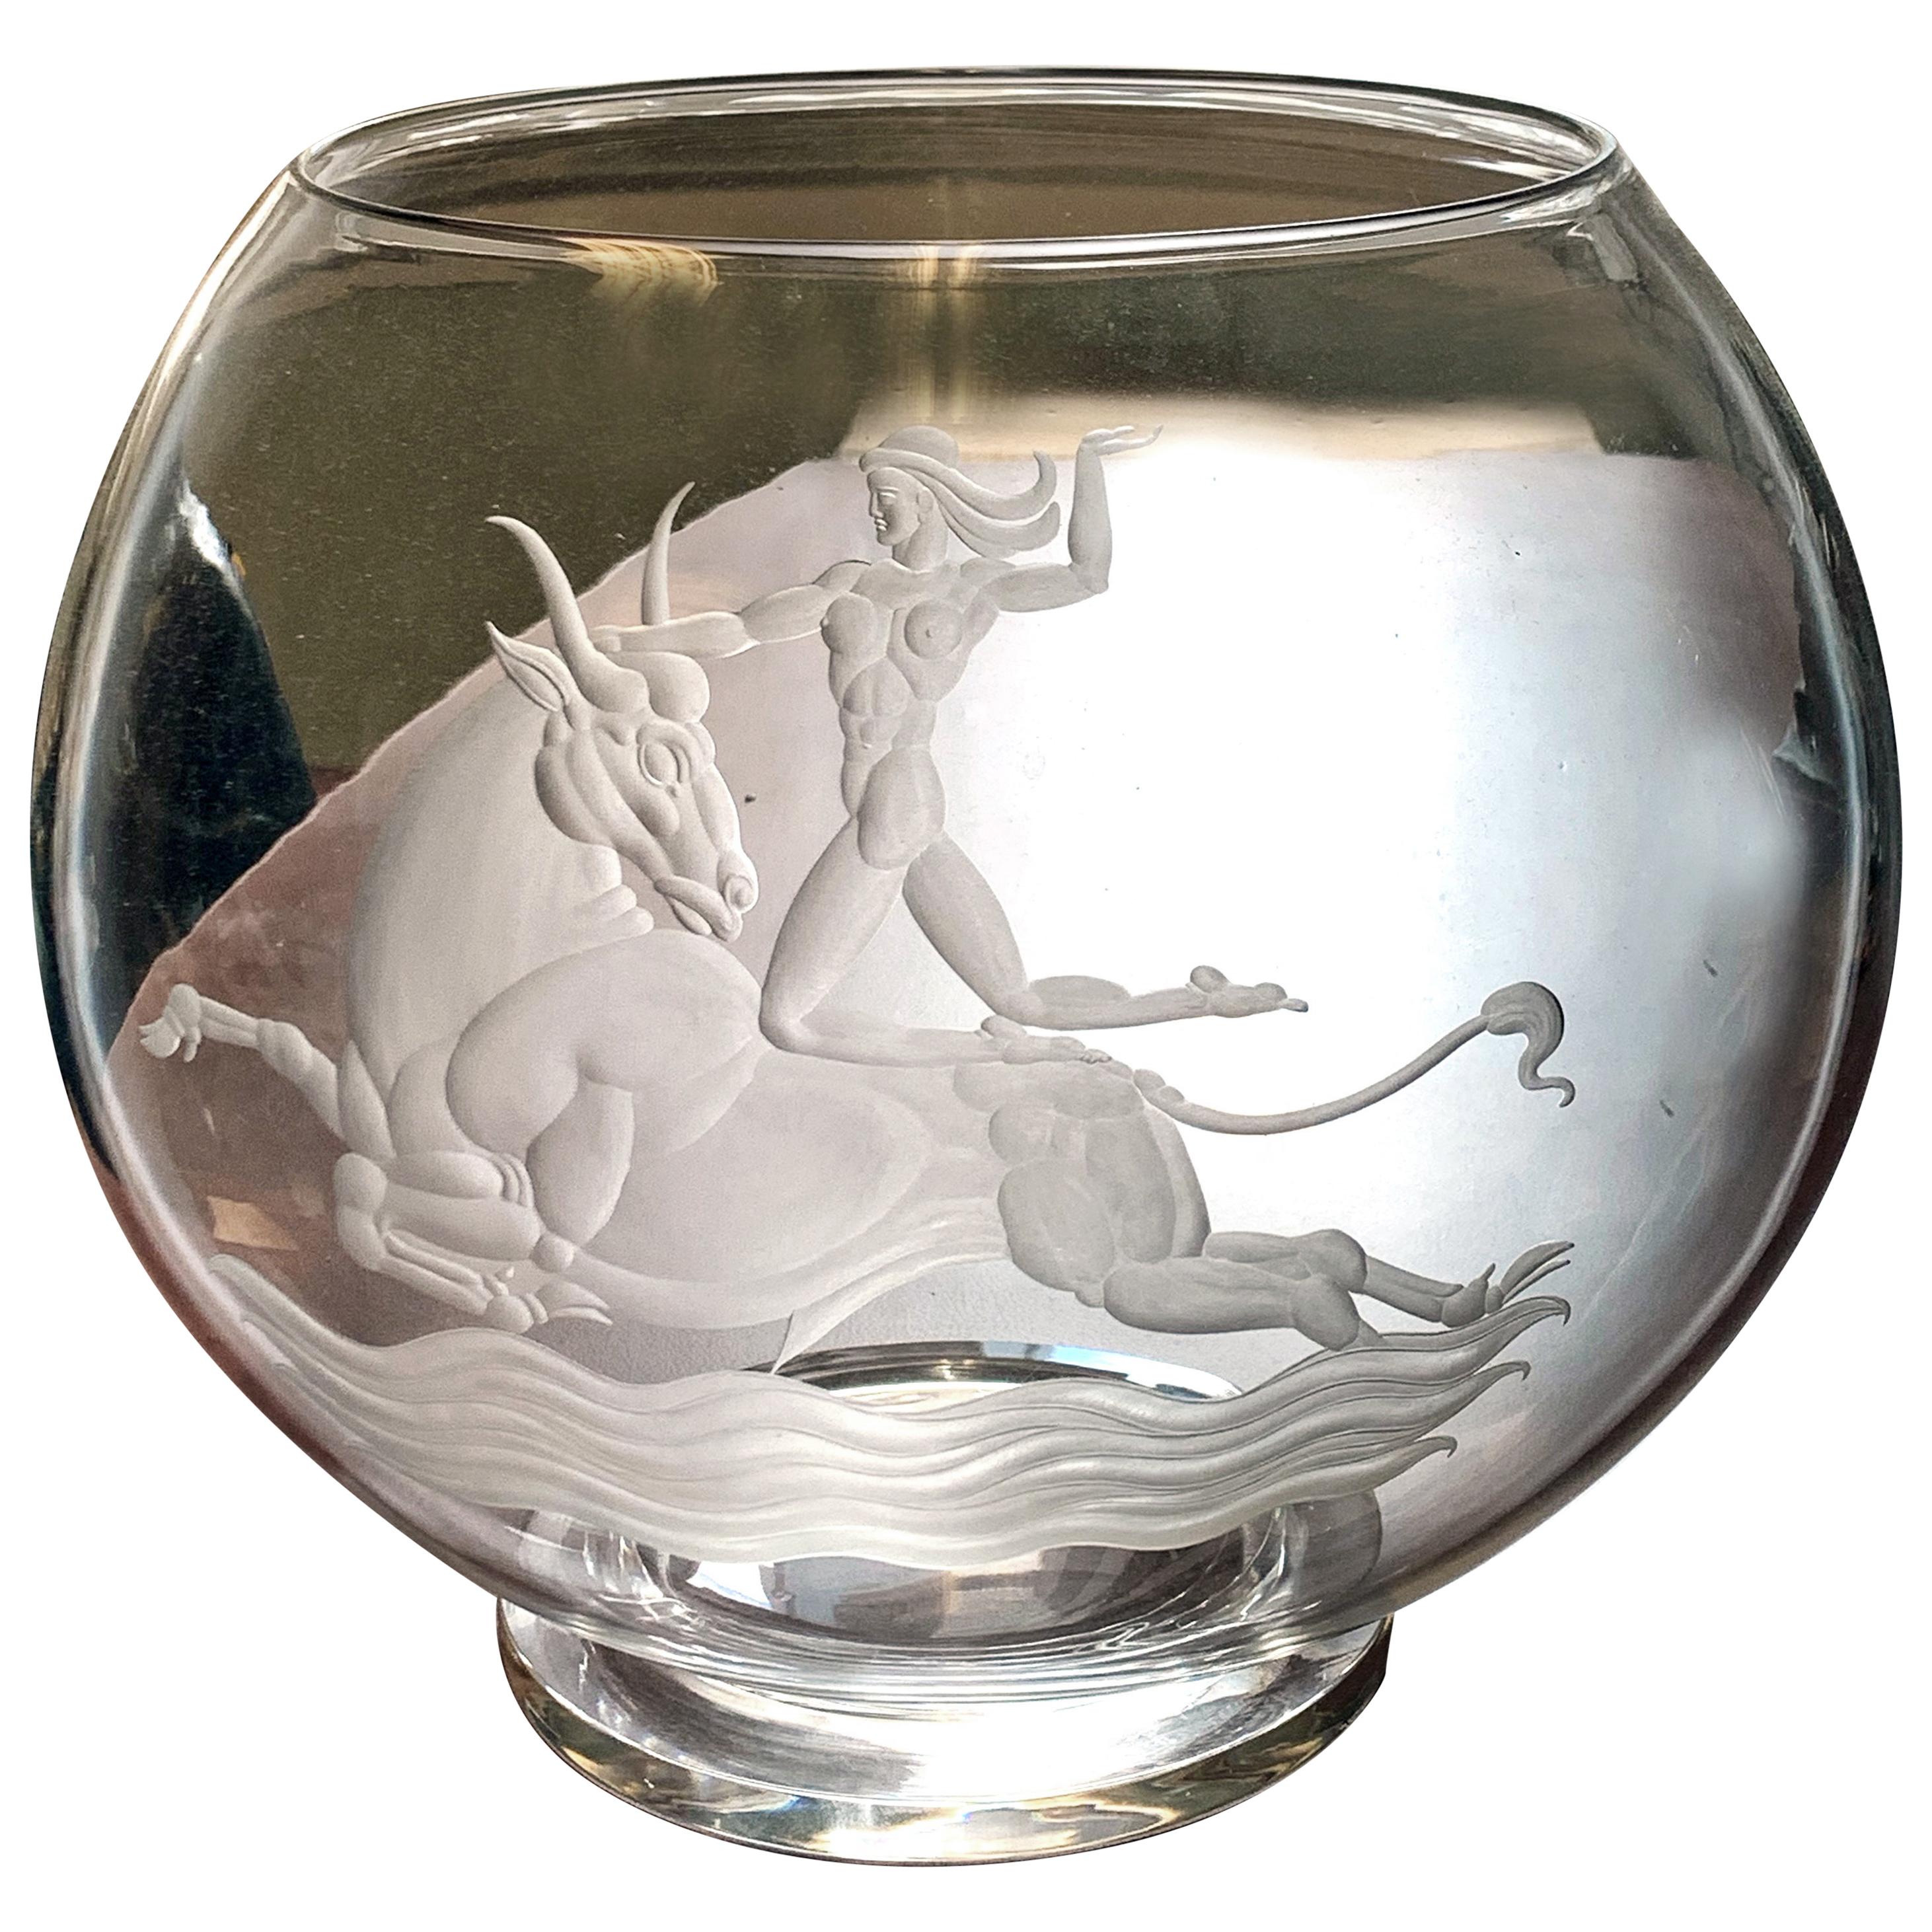 « Europa & the Bull », chef-d'œuvre Art déco en verre gravé de Waugh pour Steuben